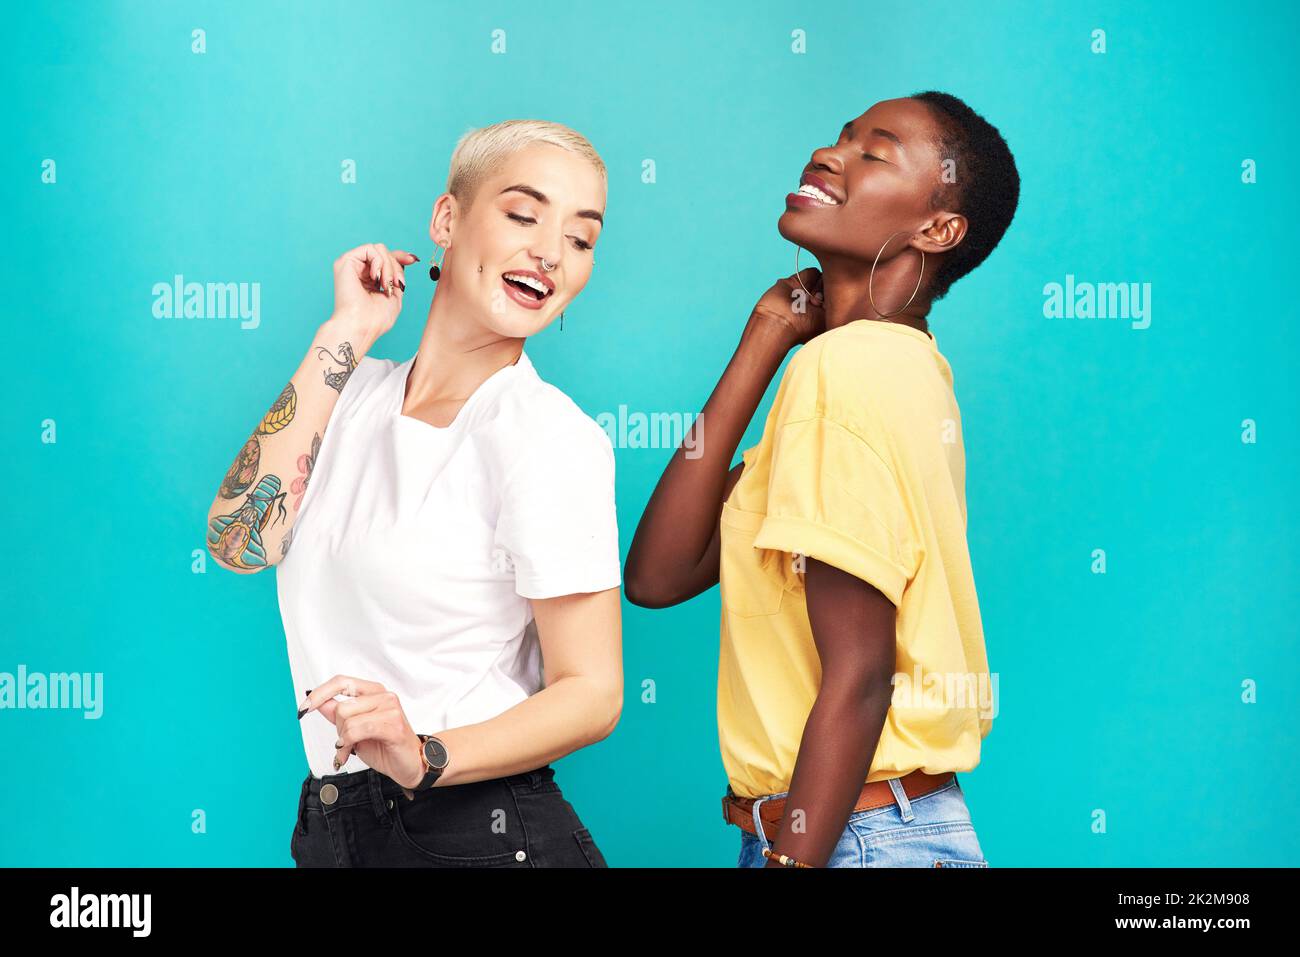 De bons amis vous font passer de bons moments.Photo studio de deux jeunes femmes dansant ensemble sur fond turquoise. Banque D'Images